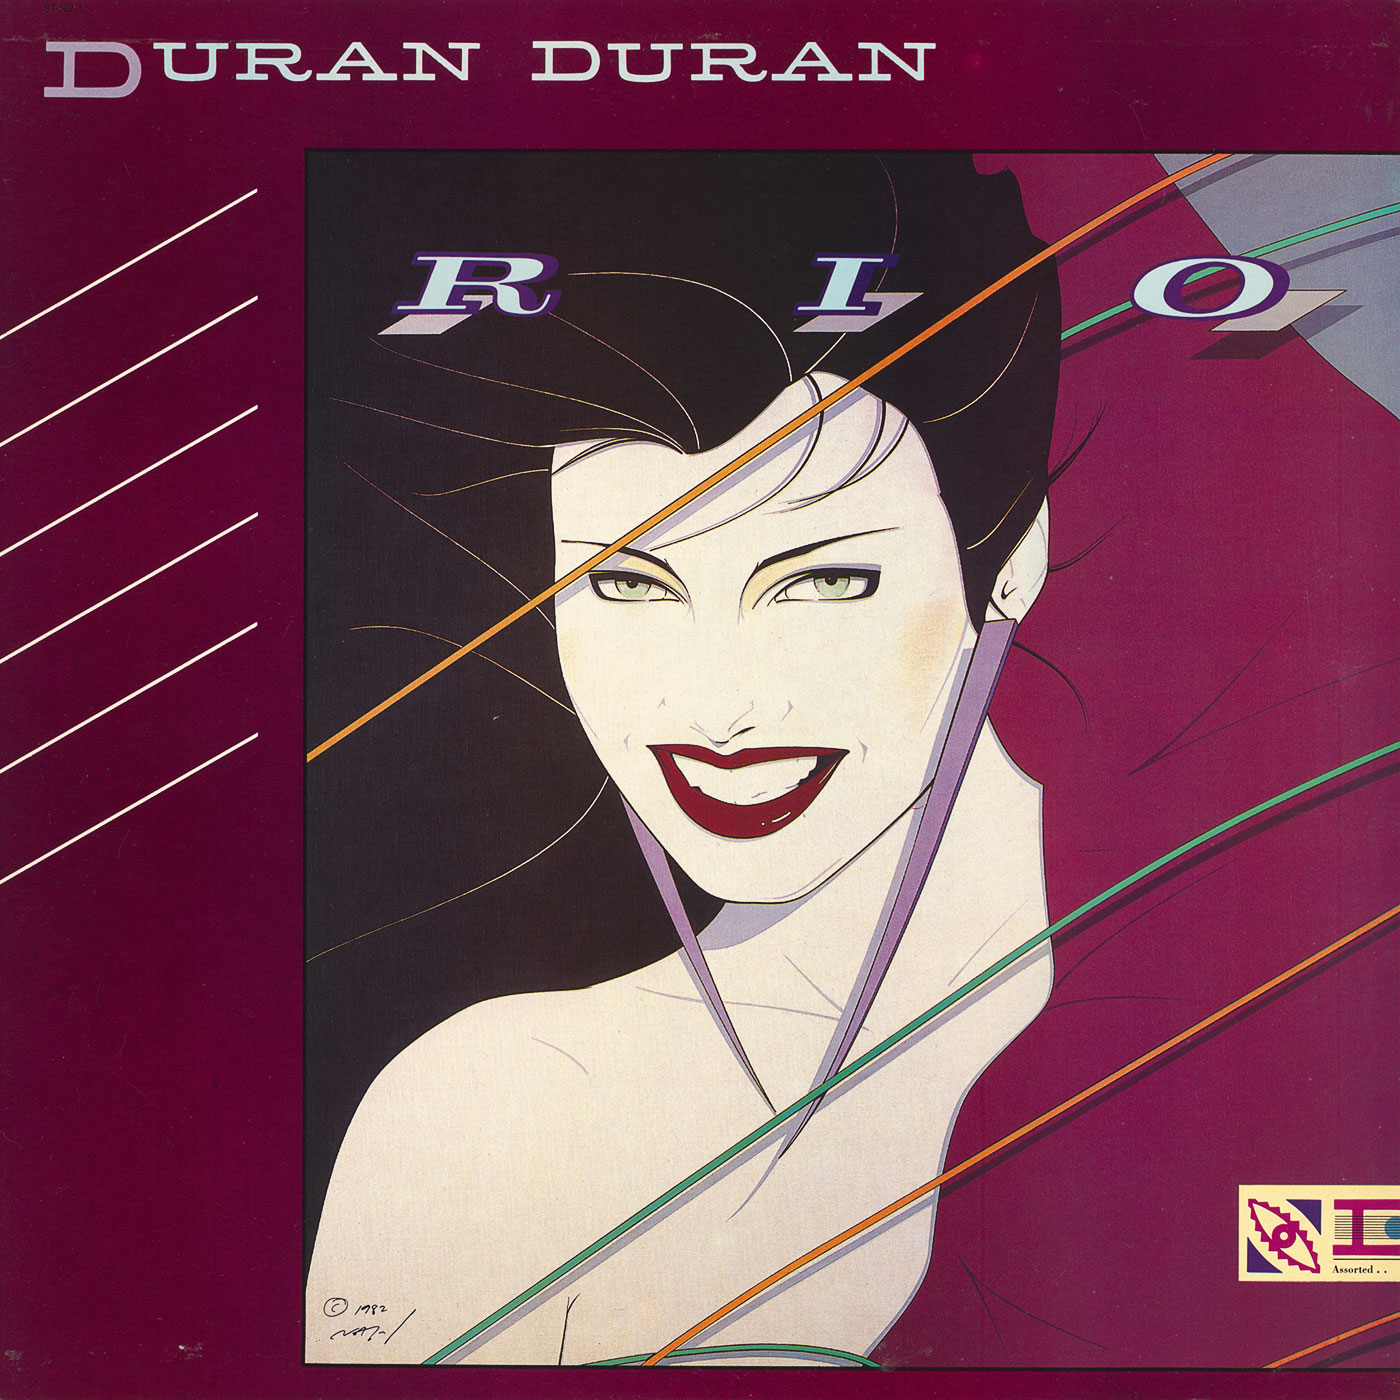 514 Duran Duran – Rio